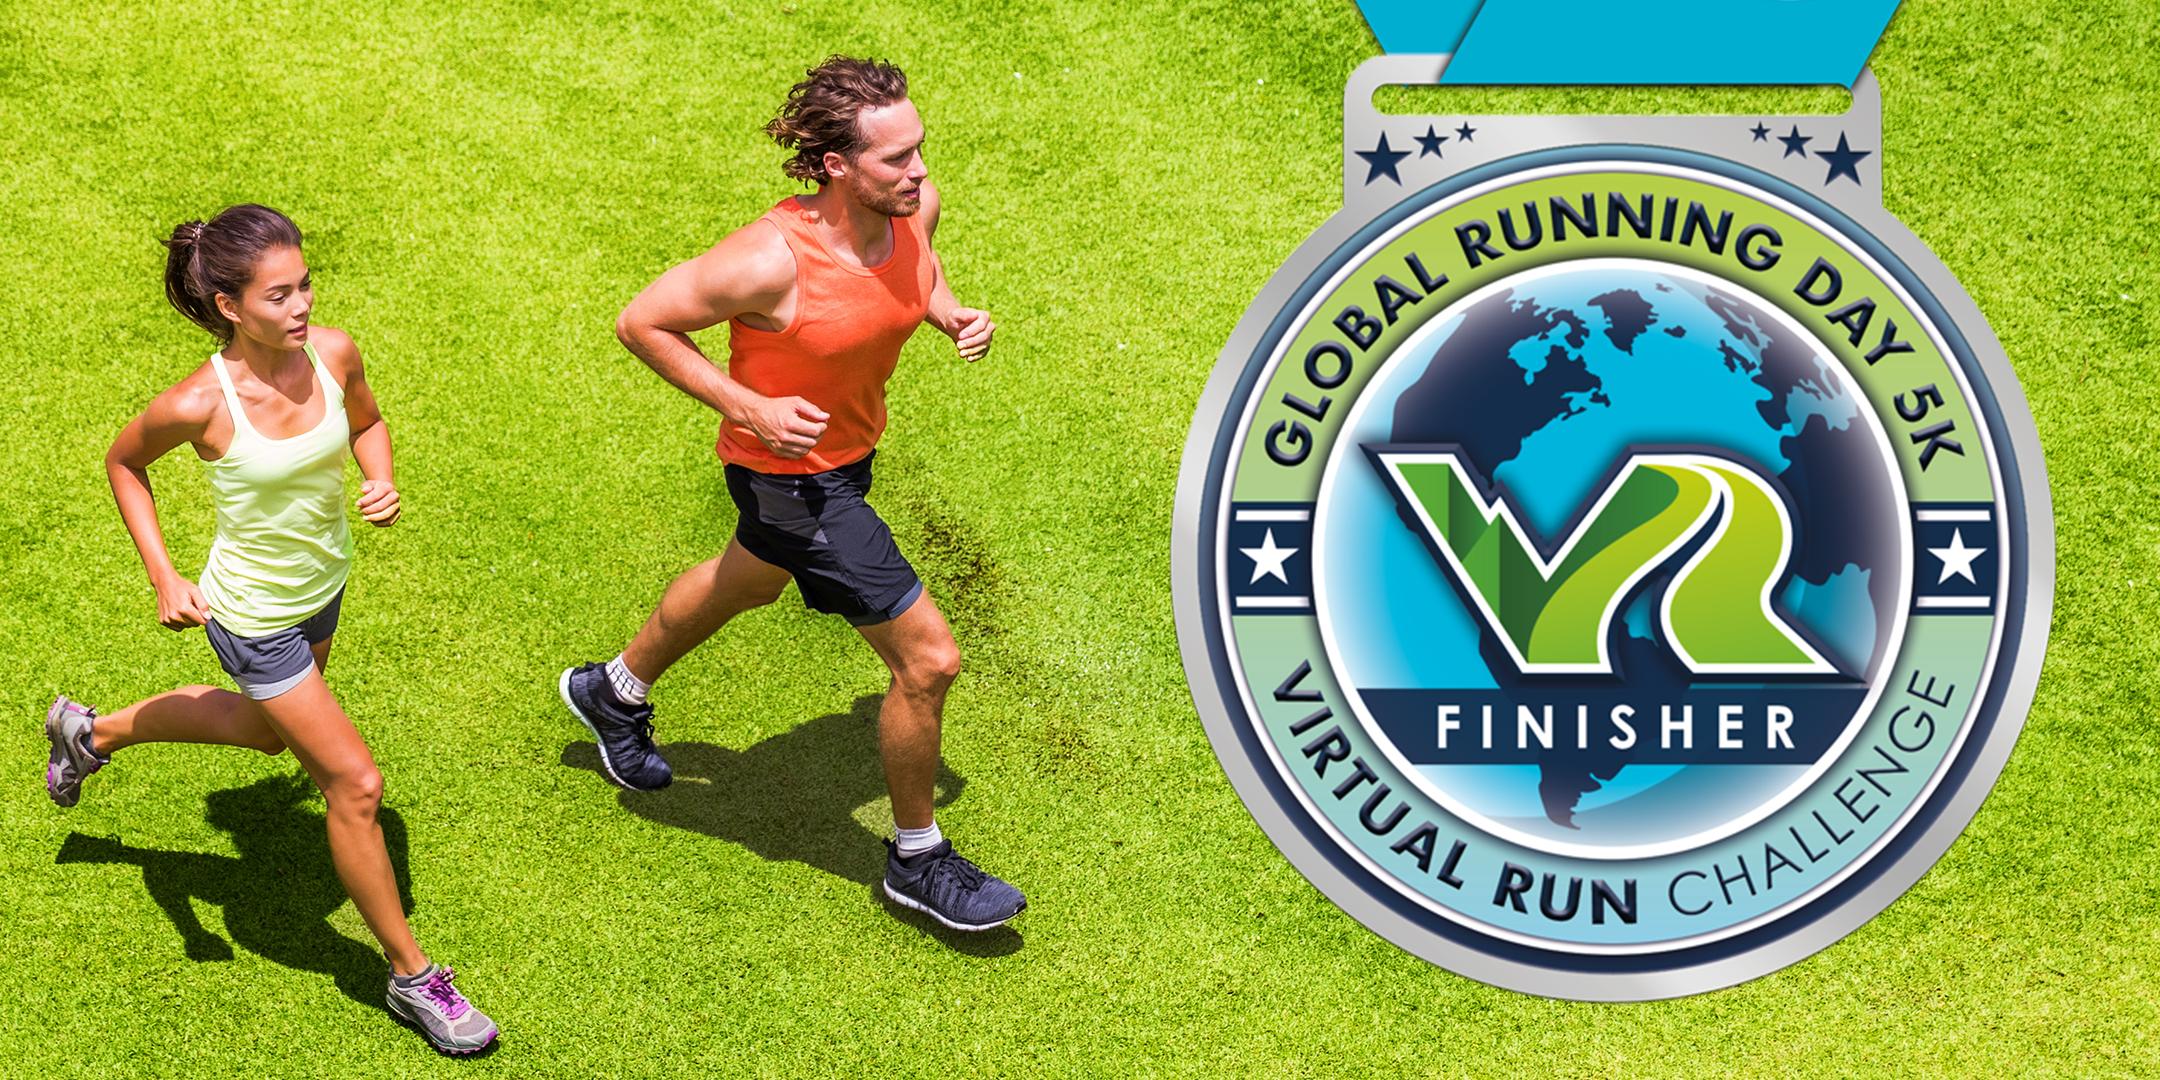 2020 Global Running Day Free Virtual 5k - Austin